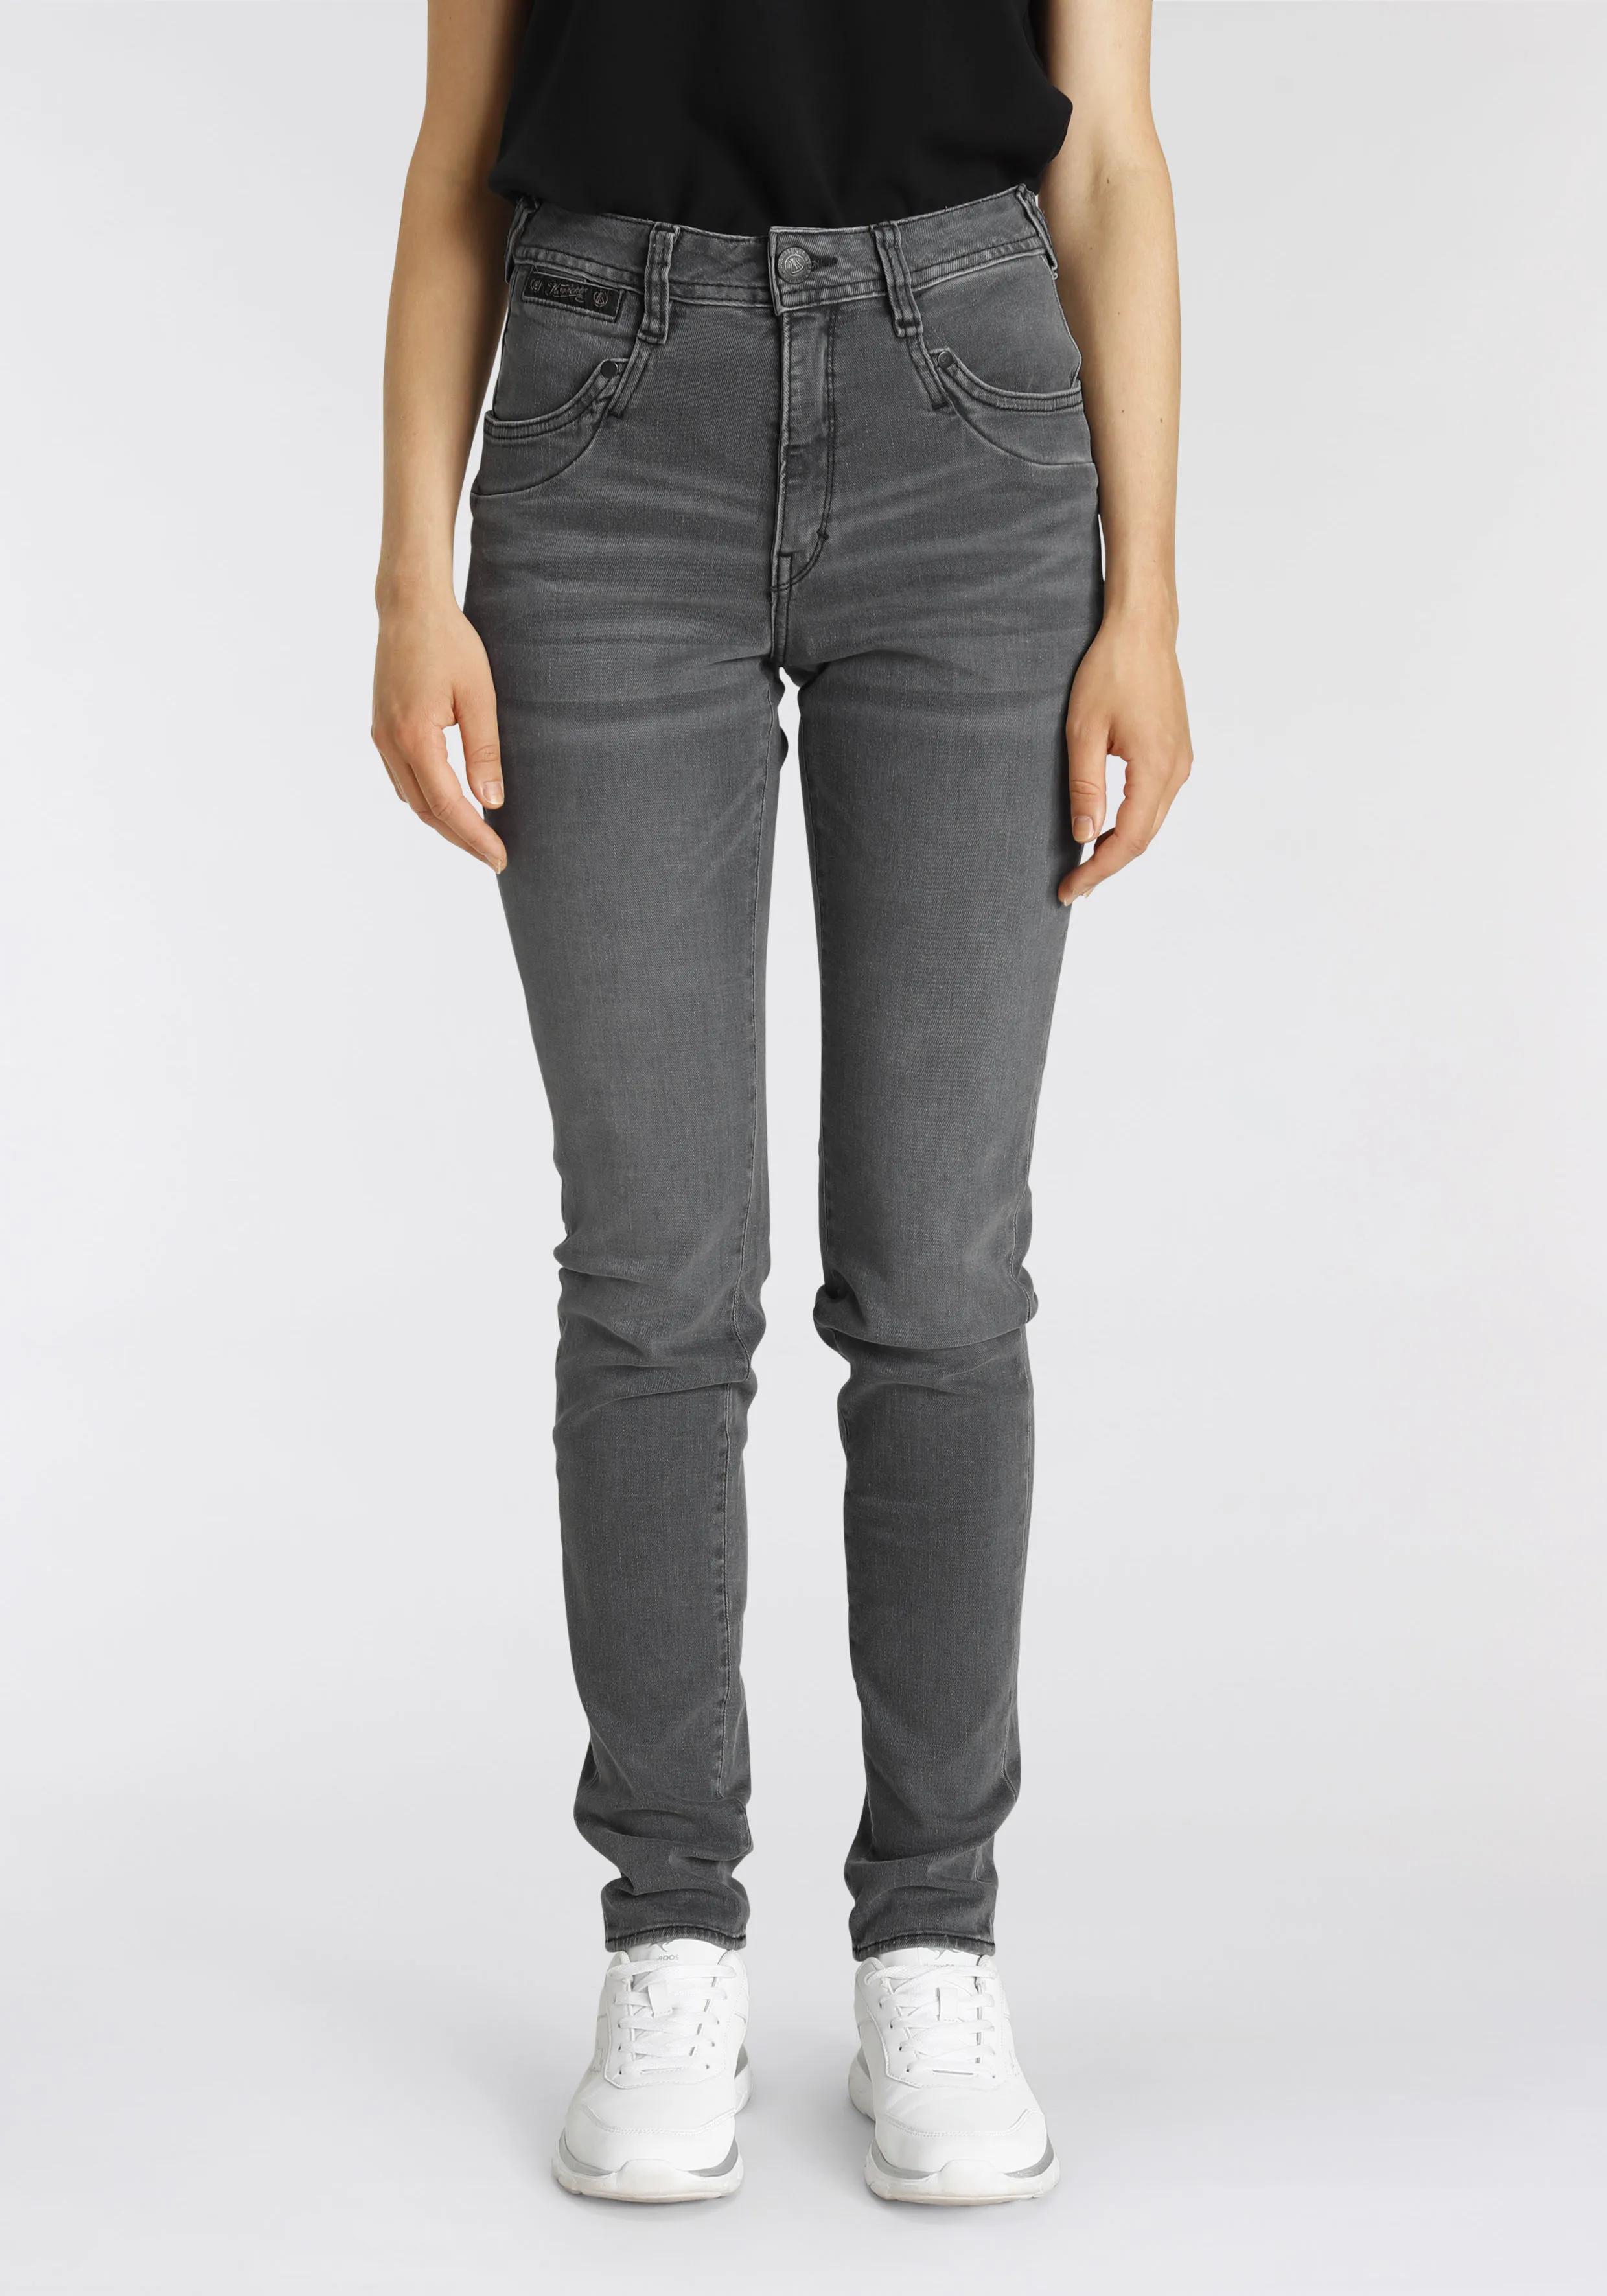 High-waist-Jeans HERRLICHER "PIPER HI SLIM ORGANIC DENIM CASHMERE TOUCH" Gr. 25, Länge 30, grau (o x y) Damen Jeans Röhrenjeans umweltfreundlich dank Kitotex Technologie